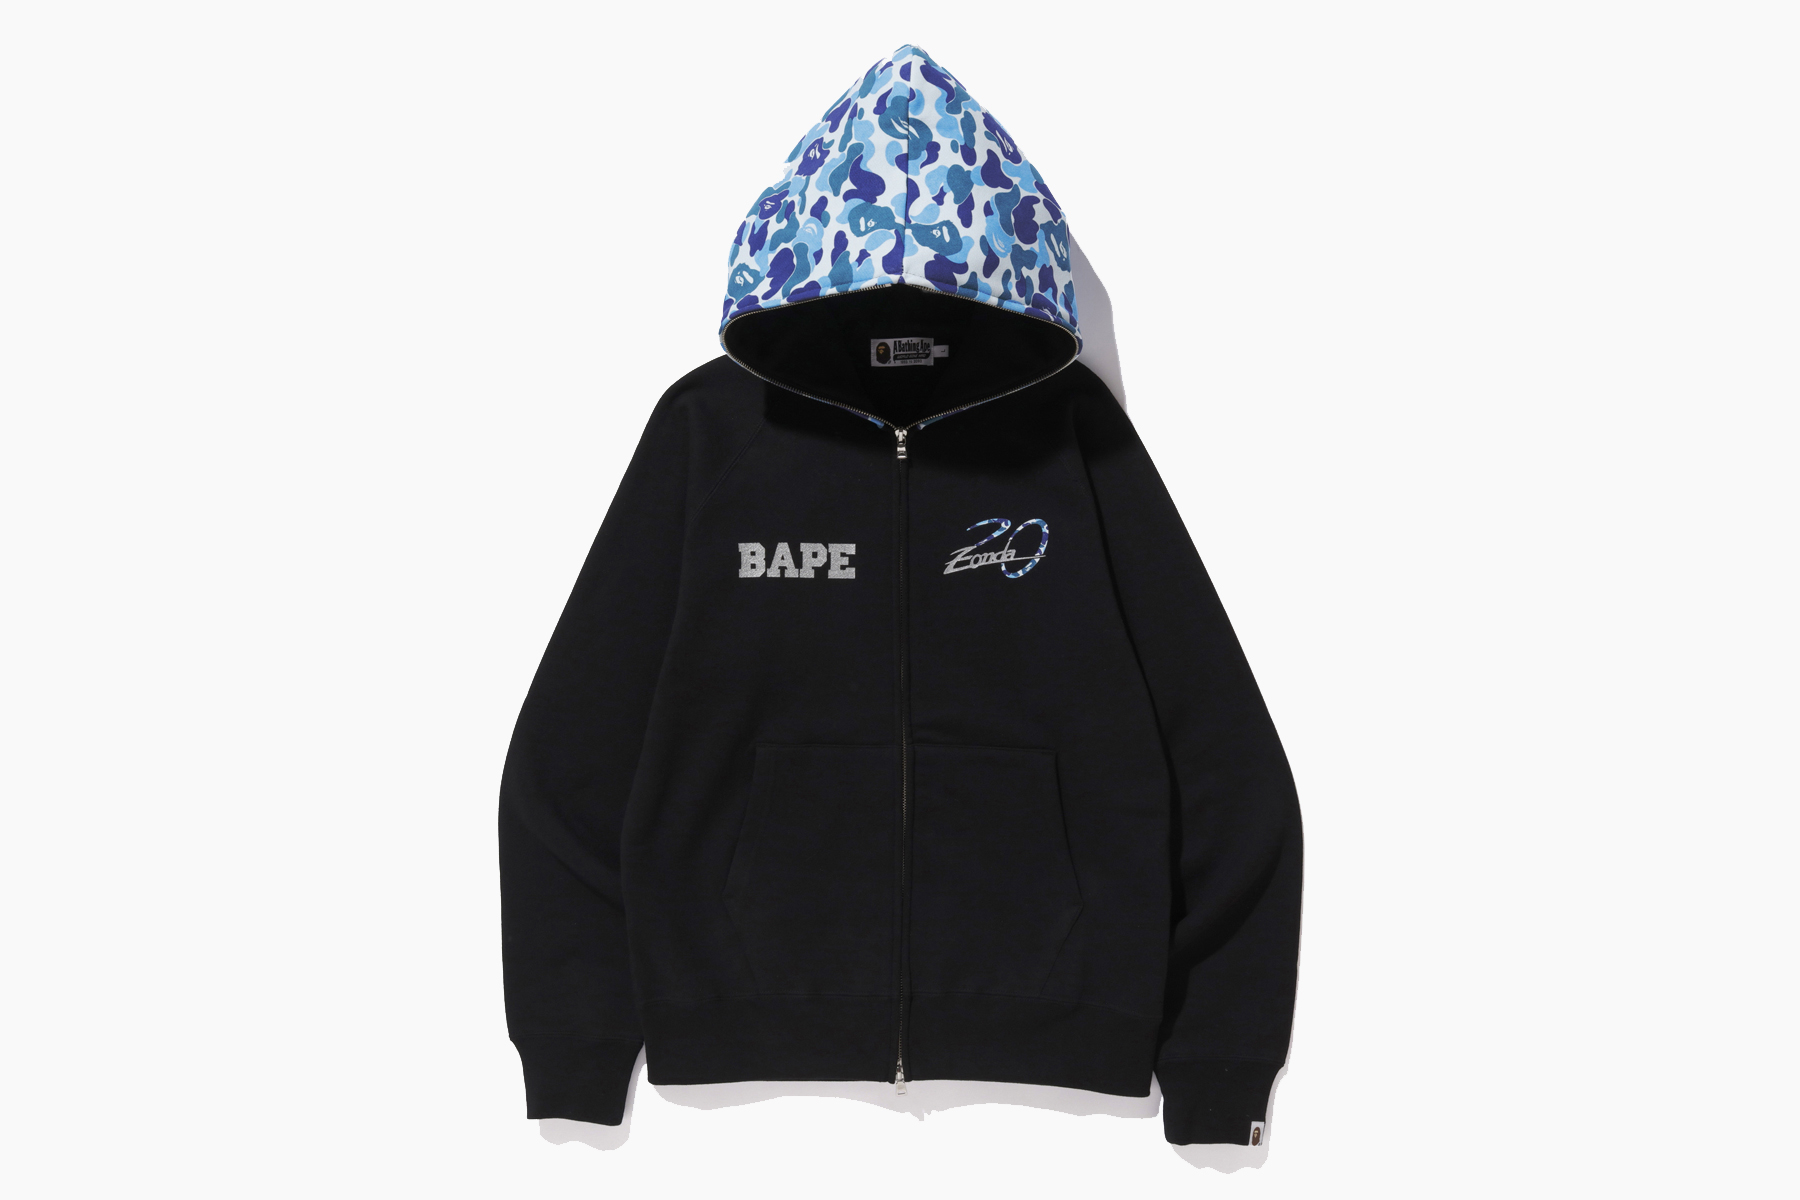 bape hoodie expensive